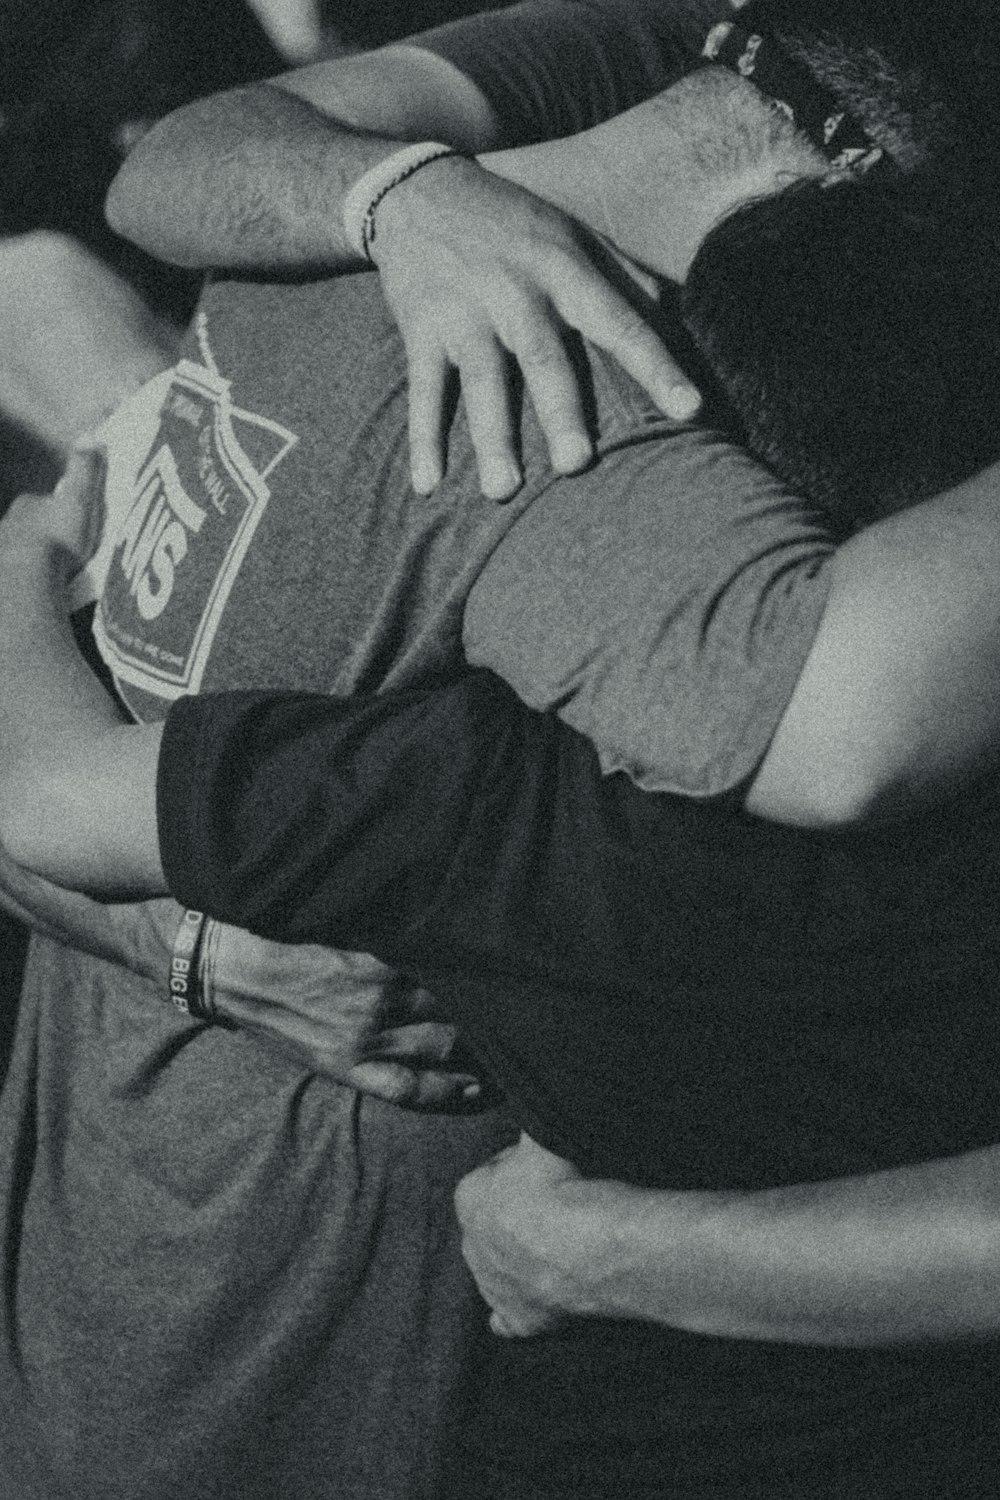 Fotografía en escala de grises de hombres haciendo un abrazo grupal